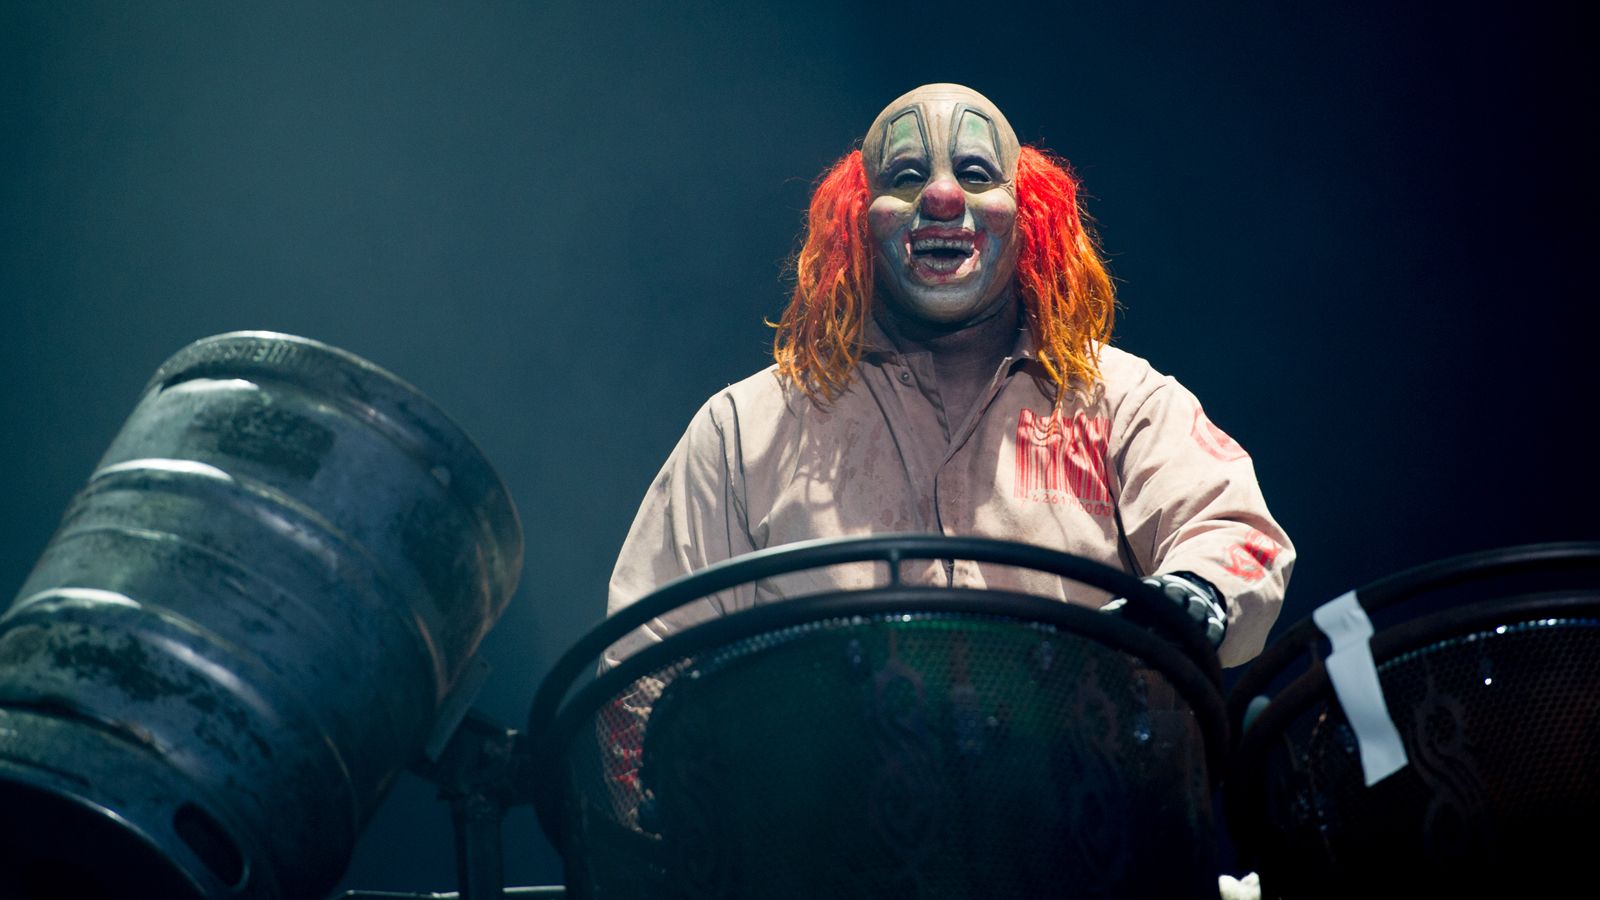 Shawn "Clown" Crahan habla sobre si alguna vez Slipknot tocará sin máscaras | Garaje del Rock